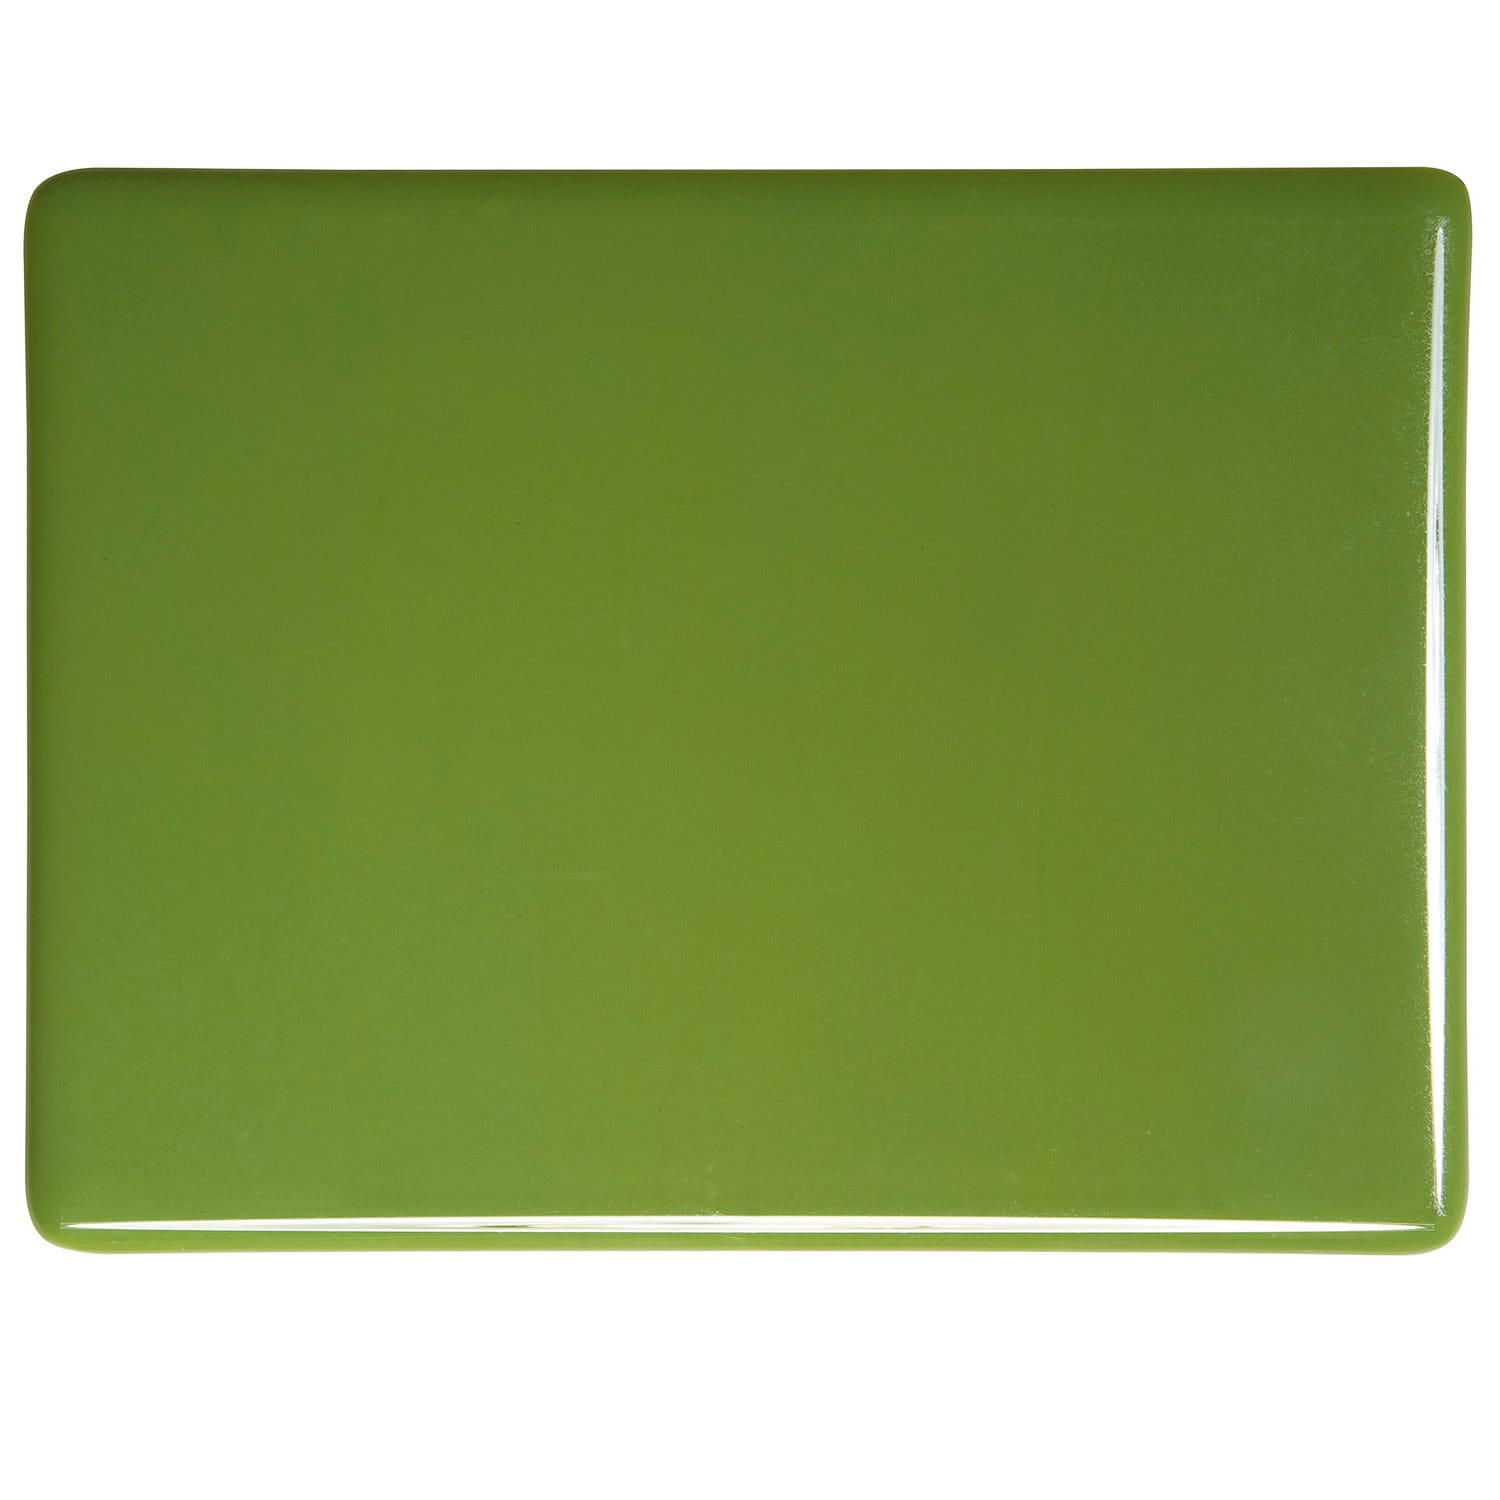 Bullseye COE90 Fusing Glass 000212 Olive Green Full Sheet